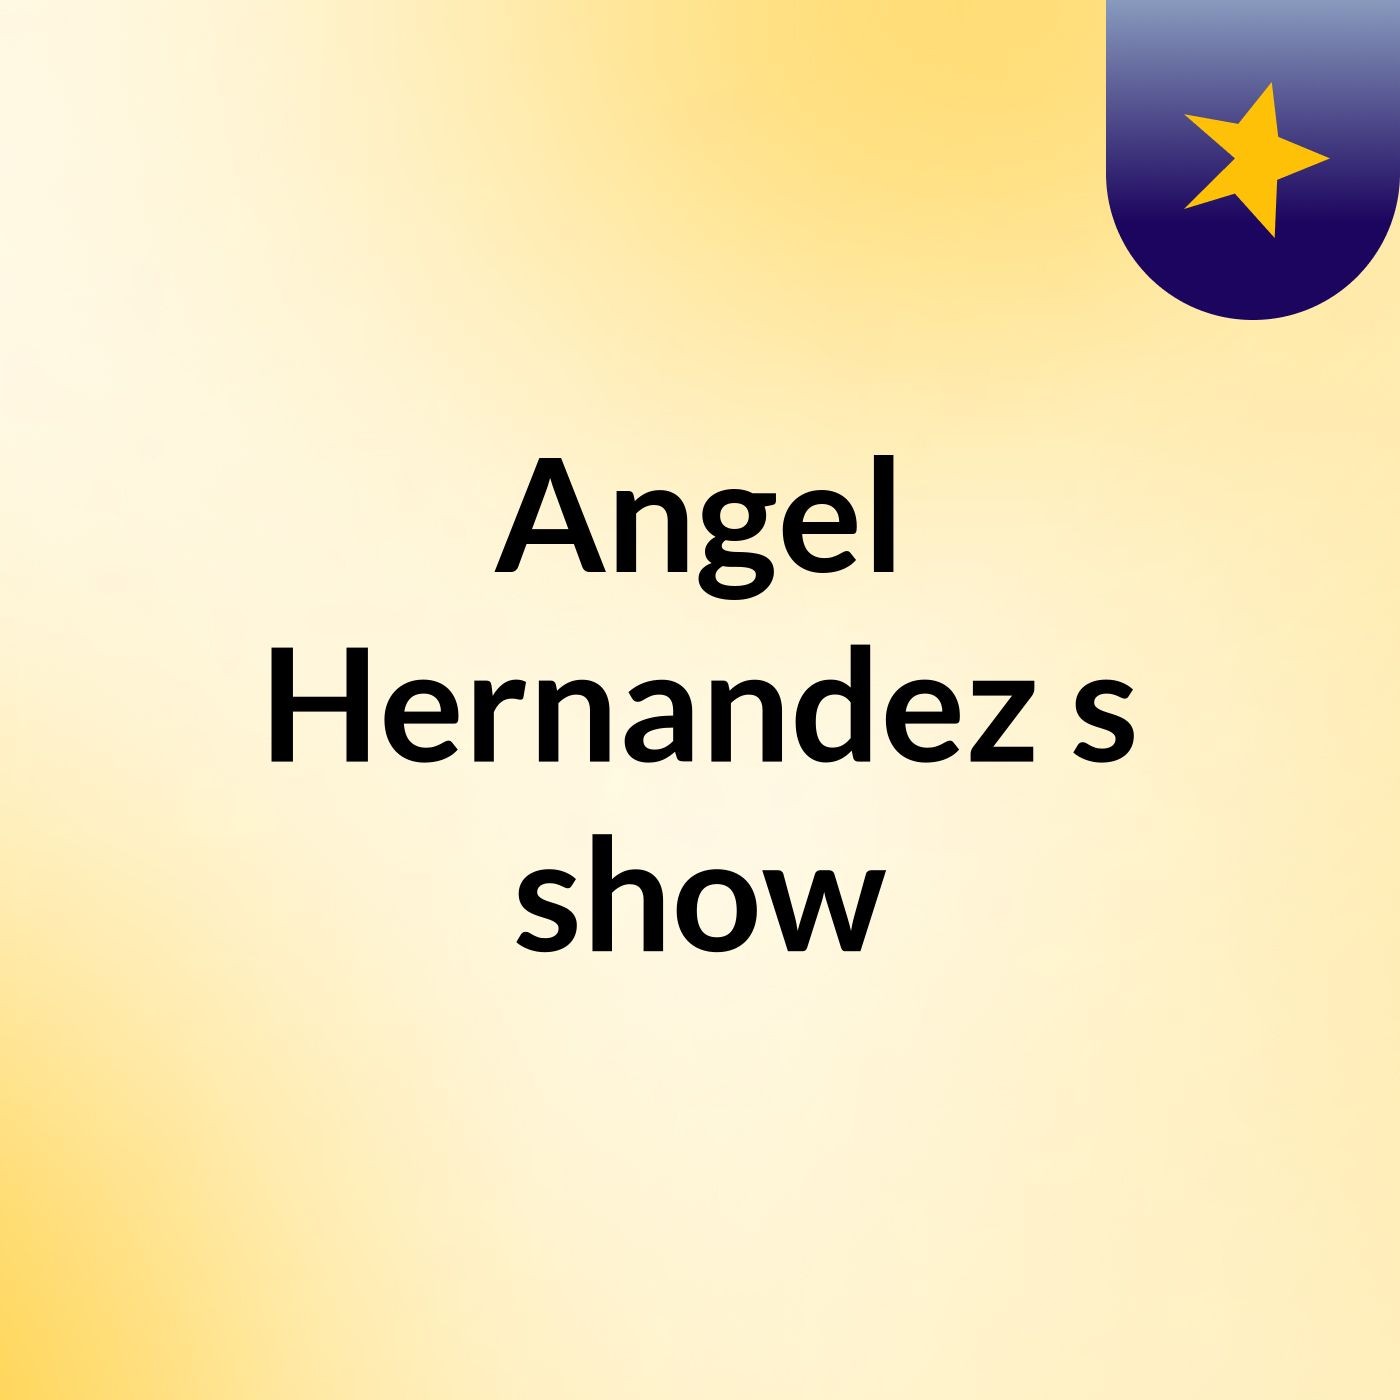 Angel Hernandez's show